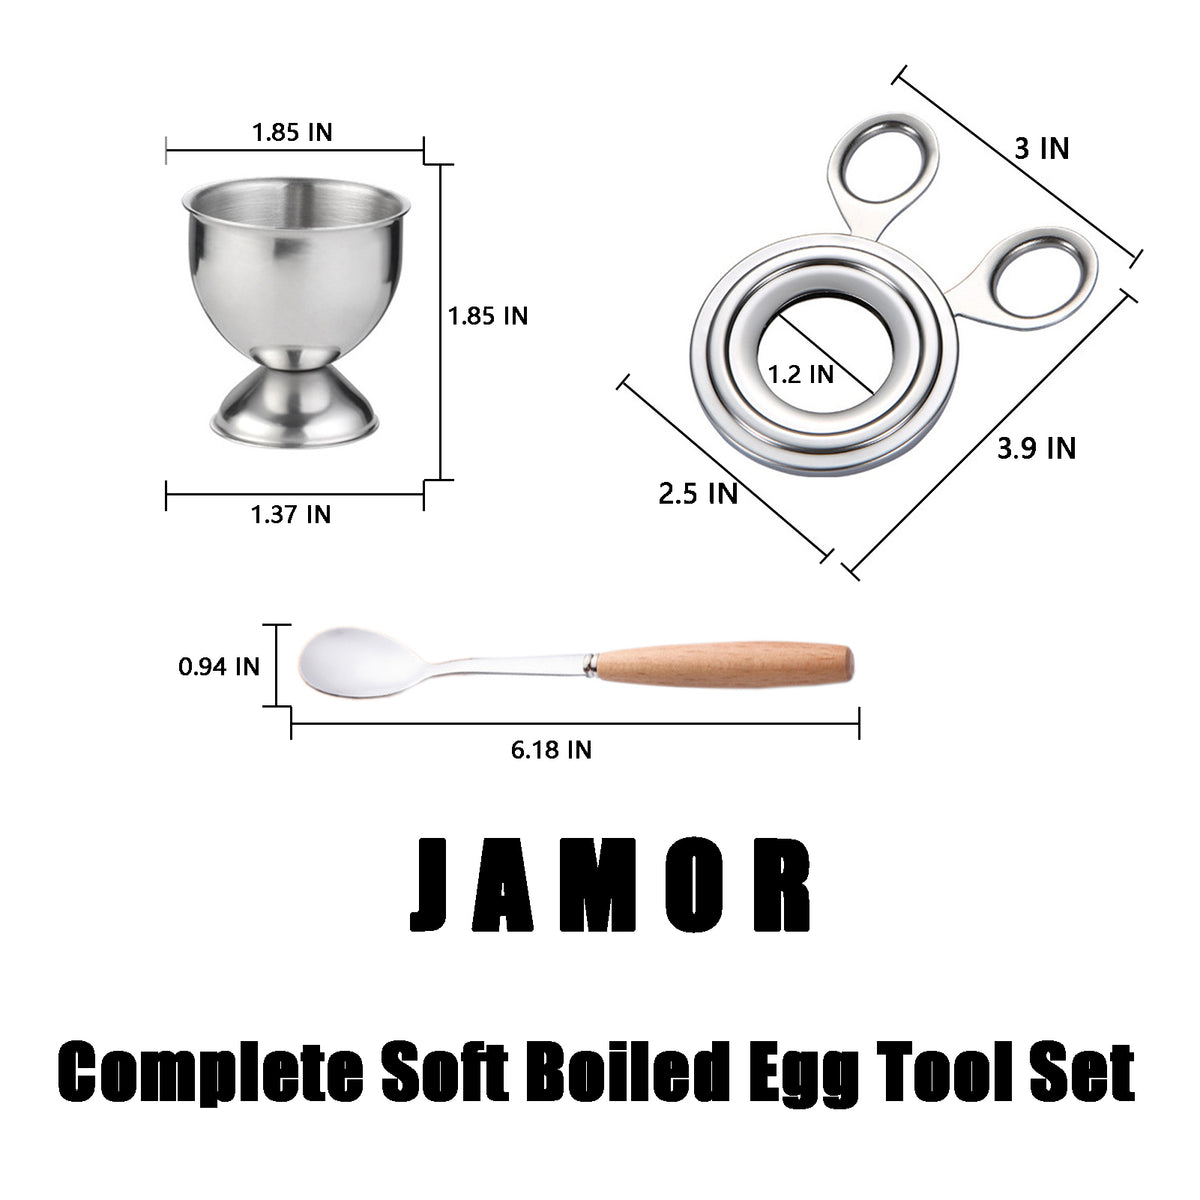 http://www.jamor-egg.com/cdn/shop/products/2_7b51f8b8-98fa-4fb8-82b7-3ab09980def3_1200x1200.jpg?v=1621913054